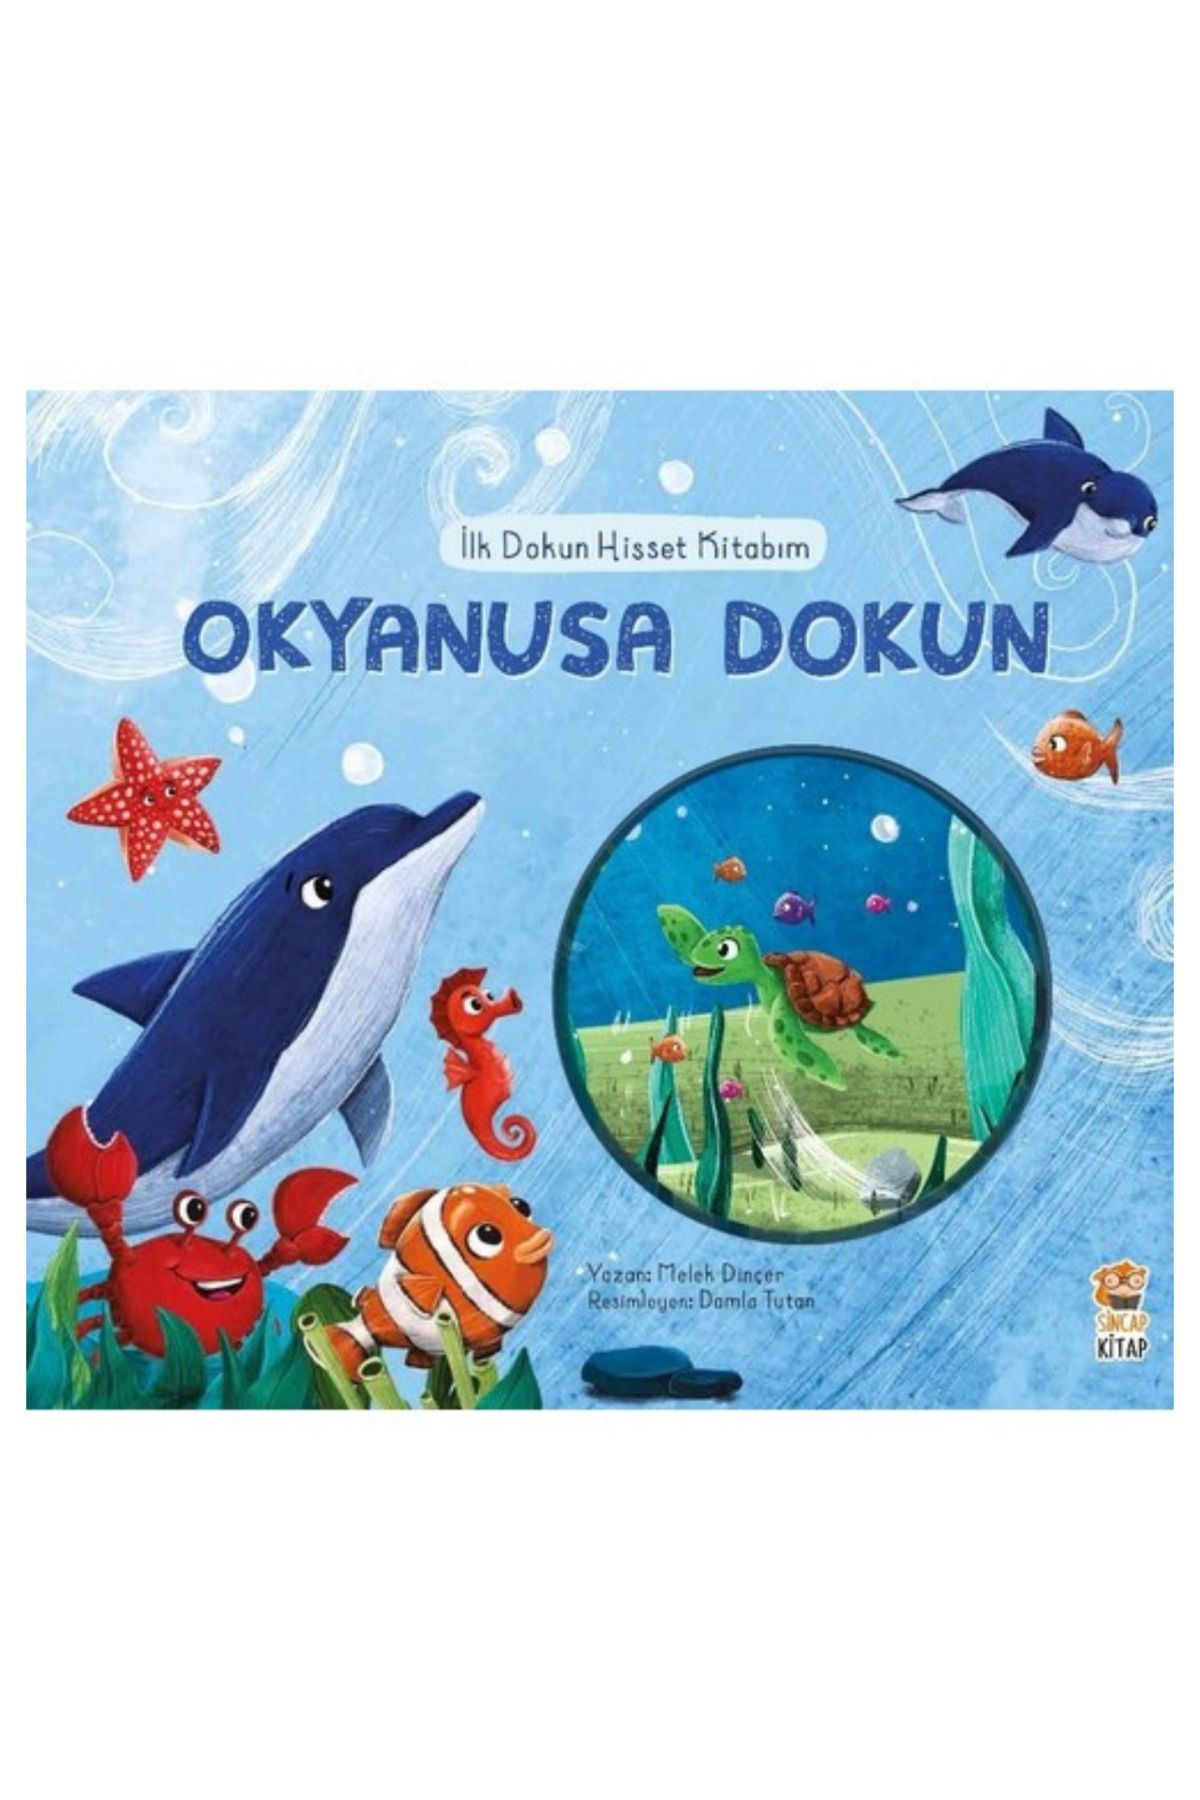 Sincap Kitap Okyanusa Dokun/İlk Dokun Hisset Kitaplarım Serisi/0-6 Yaş